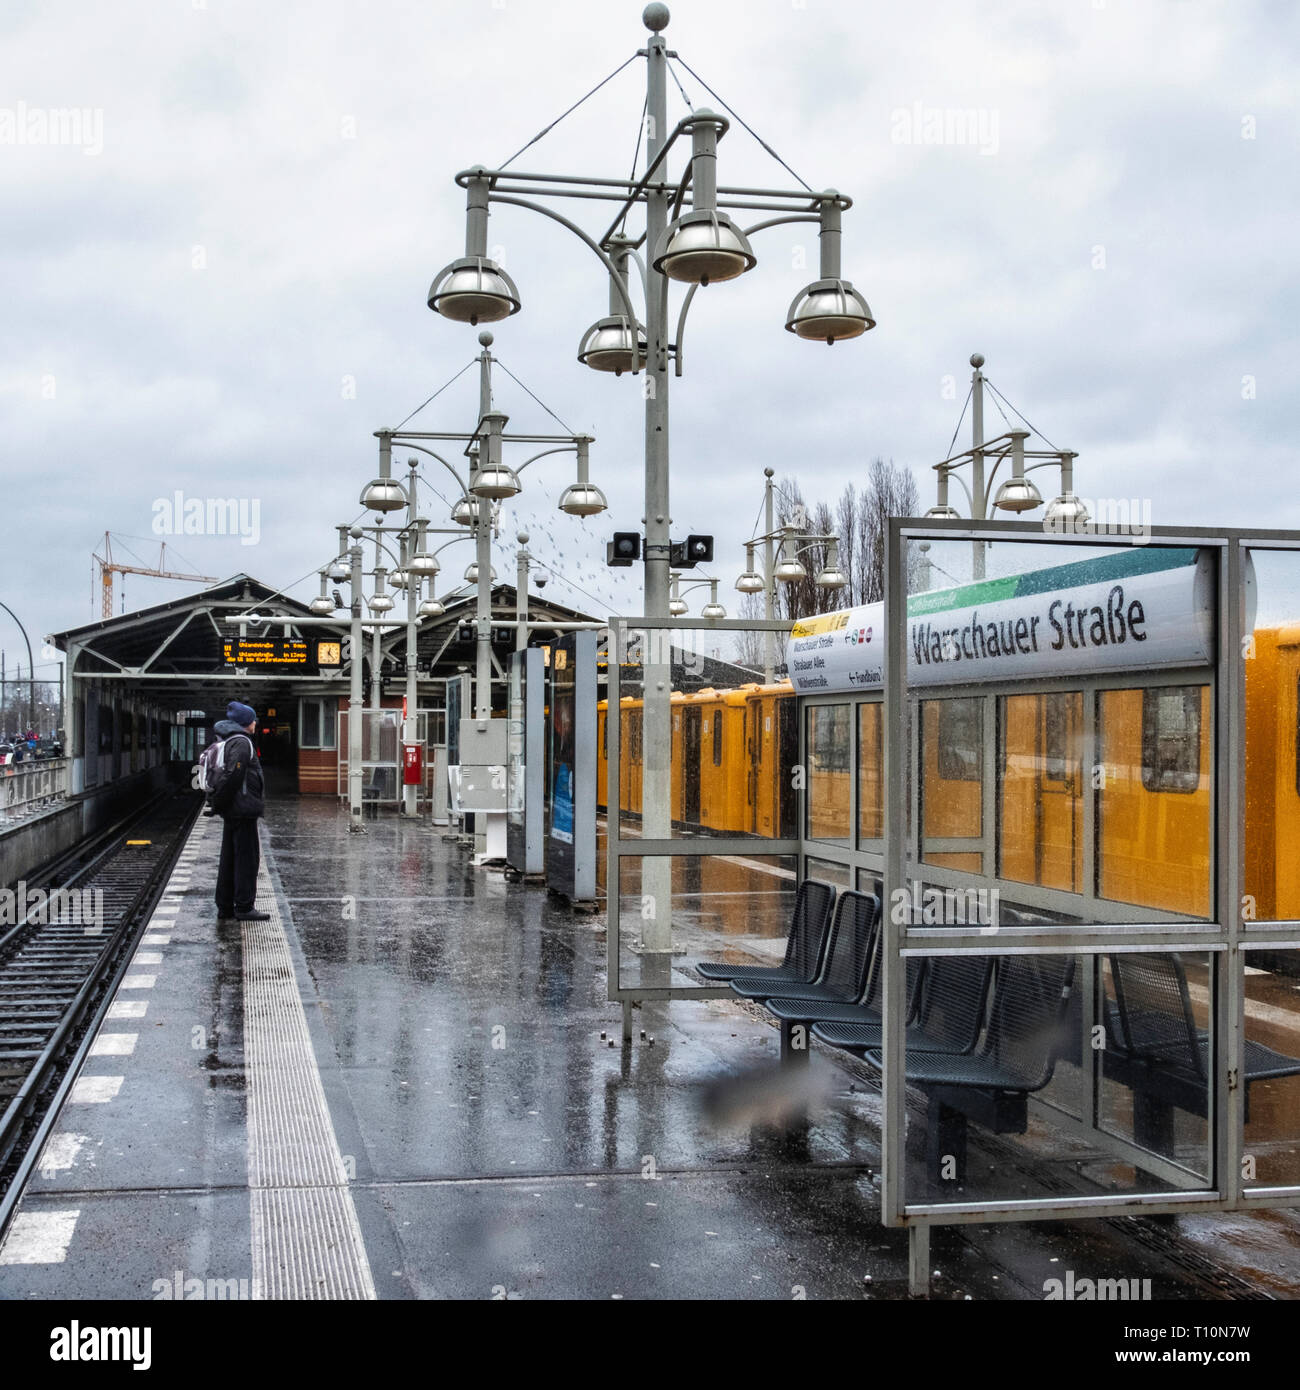 Berlin, Friedrichshain. Warschauer Strasse U-Bahn railway station platform with brick signal box and decorative lamp posts. Stock Photo